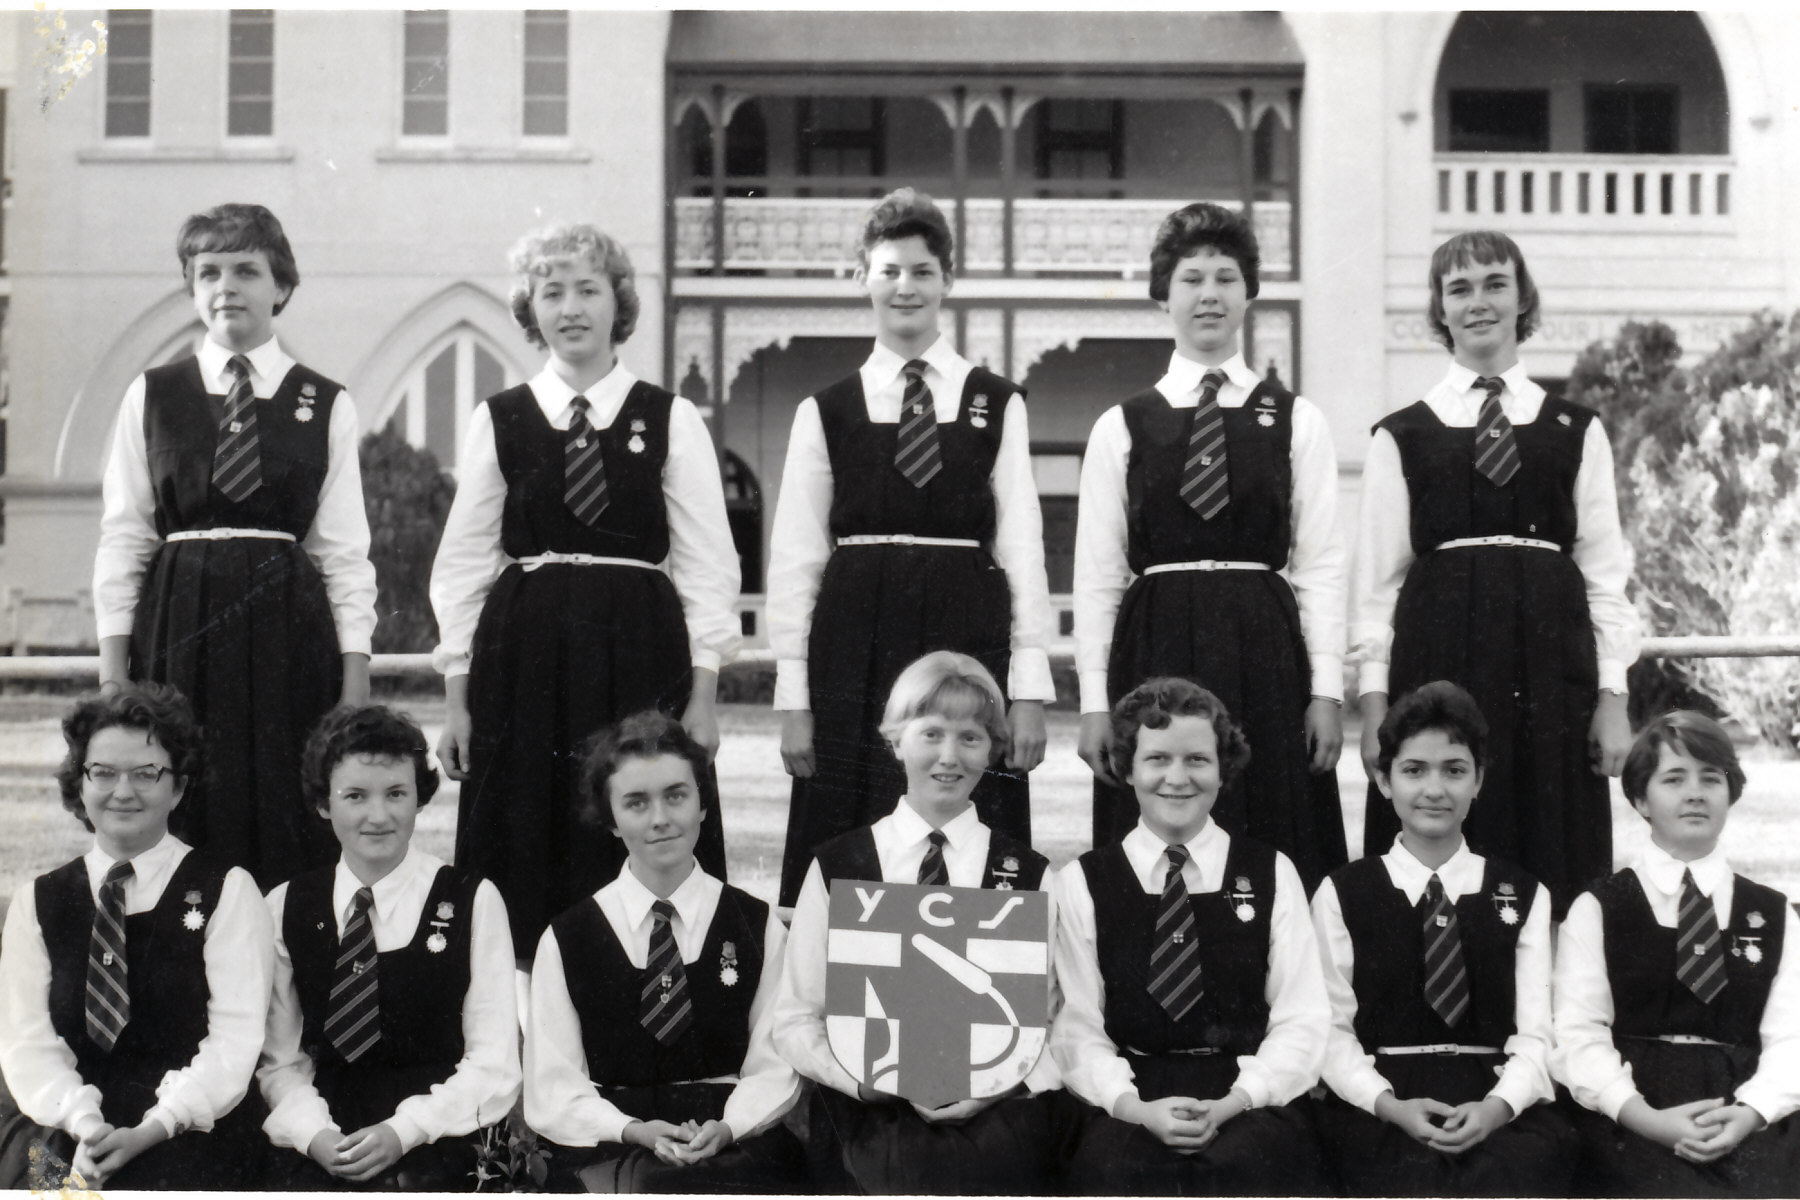 1950's Students 4